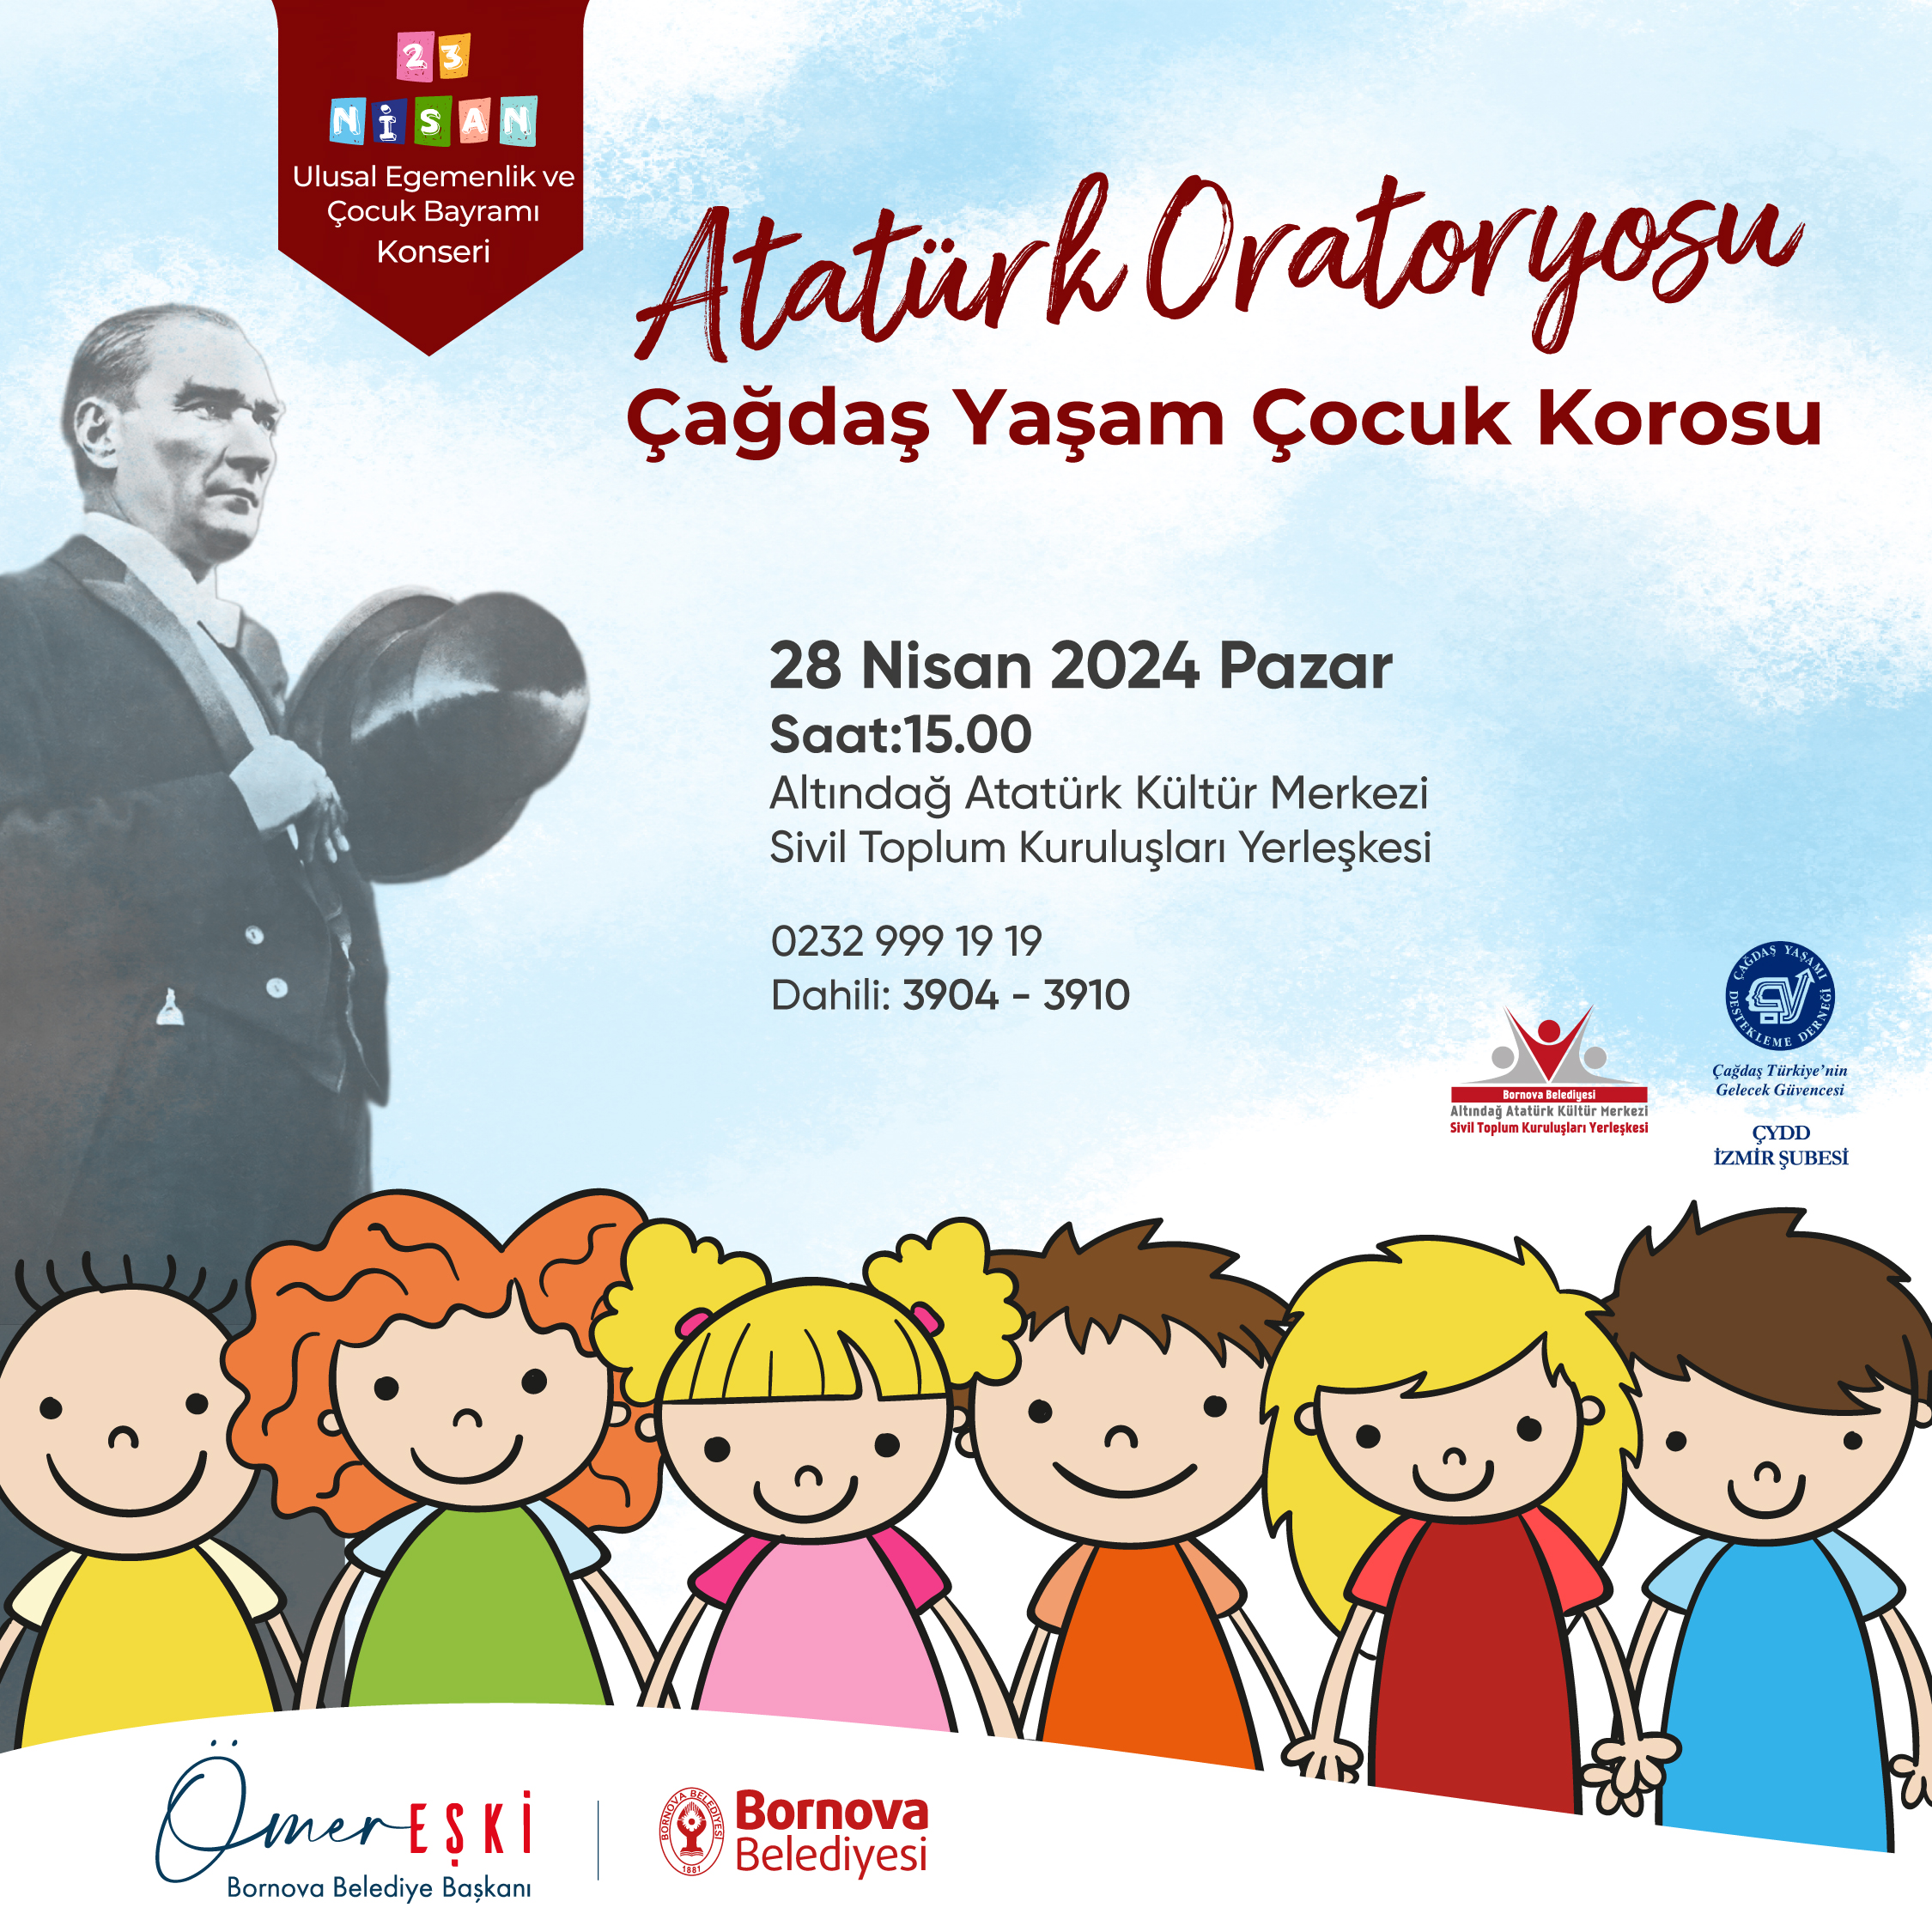 Atatürk’ün hayatı şarkılar ve şiirlerle yankılanacak  Bornova Belediyesi, 23 Nisan Ulusal Egemenlik ve Çocuk Bayramı’nın coşkusunu, Atatürk Oratoryosu ile yaşatmaya hazırlanıyor.  Çağdaş Yaşamı Destekleme Derneği (ÇYDD) İzmir Şubesi’nin kurduğu Çağdaş Yaşam Çocuk Korosu ve Bornova Belediyesi  işbirliğiyle gerçekleştirilecek Atatürk Oratoryosu, 28 Nisan Pazartesi günü saat 15.00’te  Altındağ Atatürk Kültür Merkezi Sivil Toplum Kuruluşları Yerleşkesi’nde sahnelenecek. Çağdaş […]